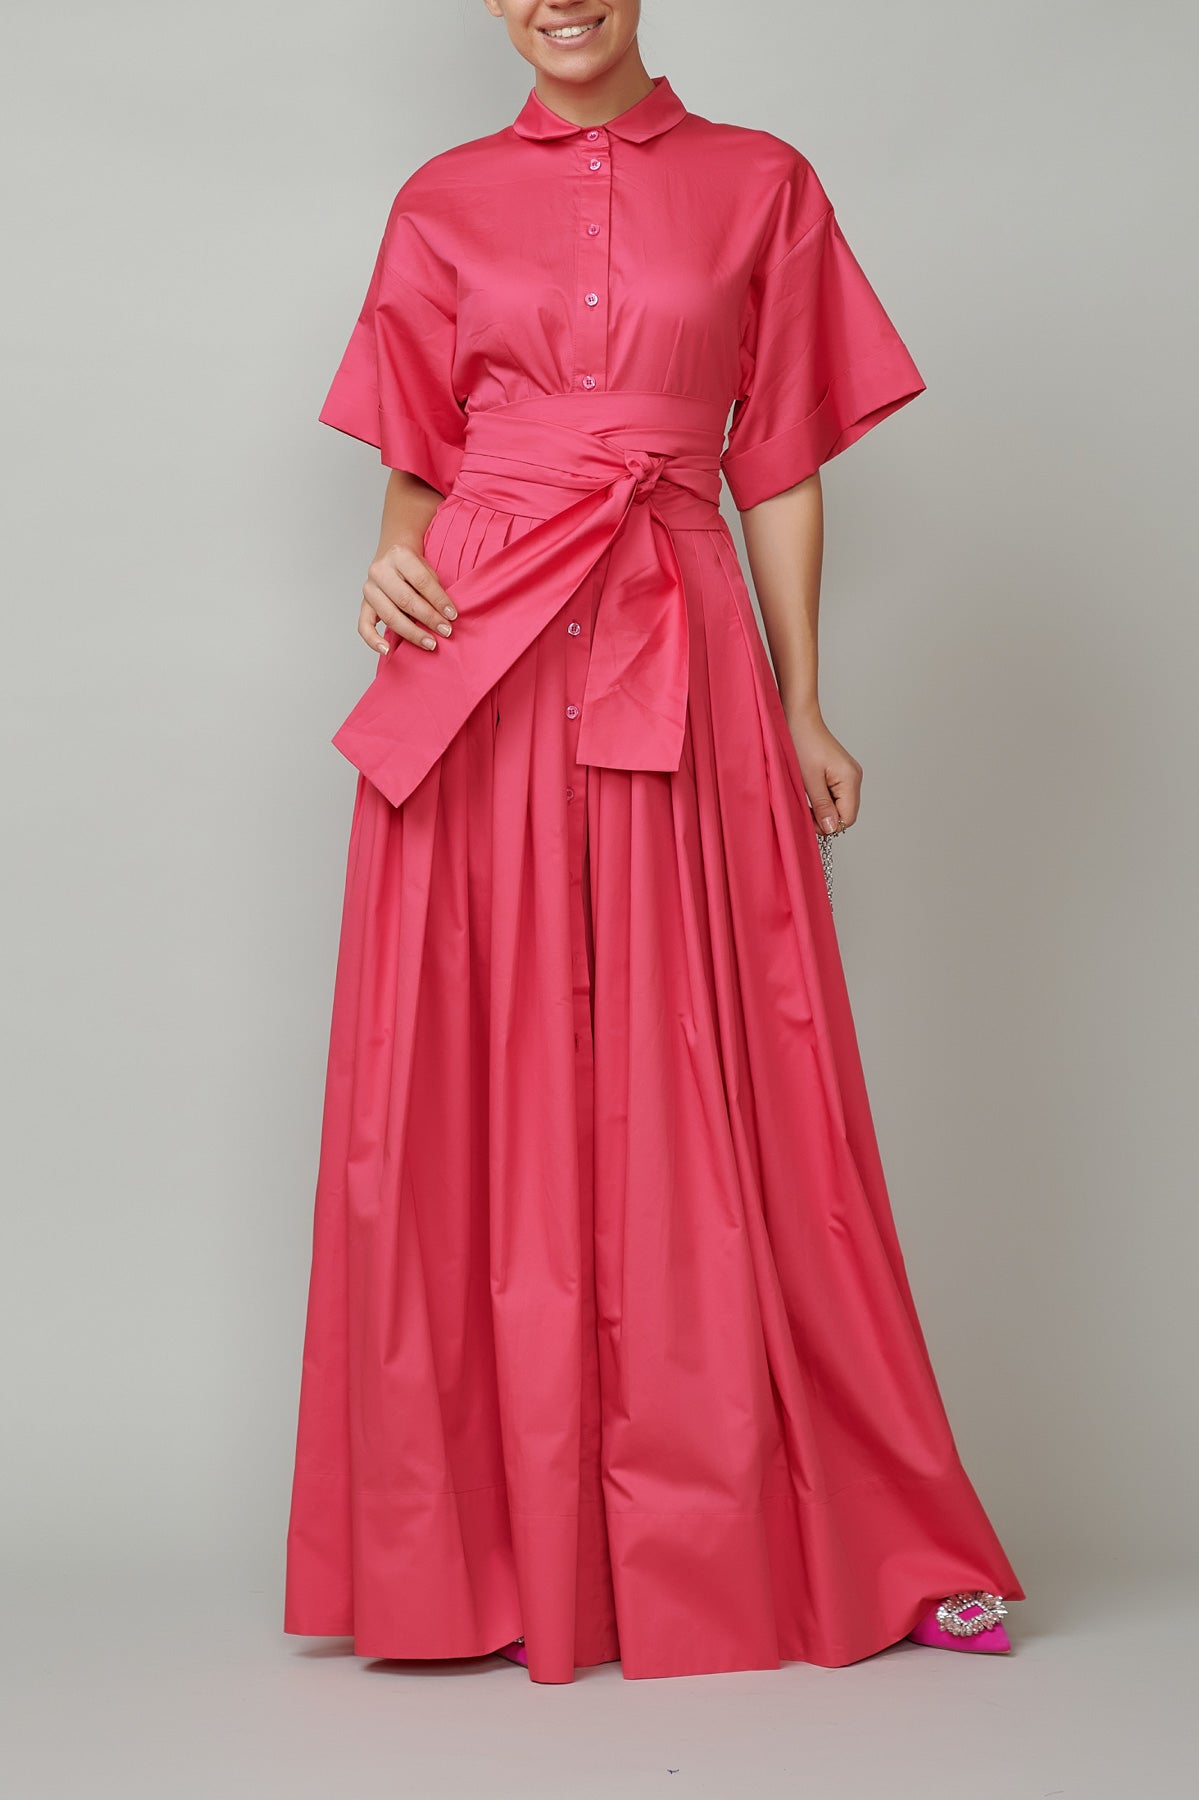 Evening dress, long, made of raspberry pink cotton